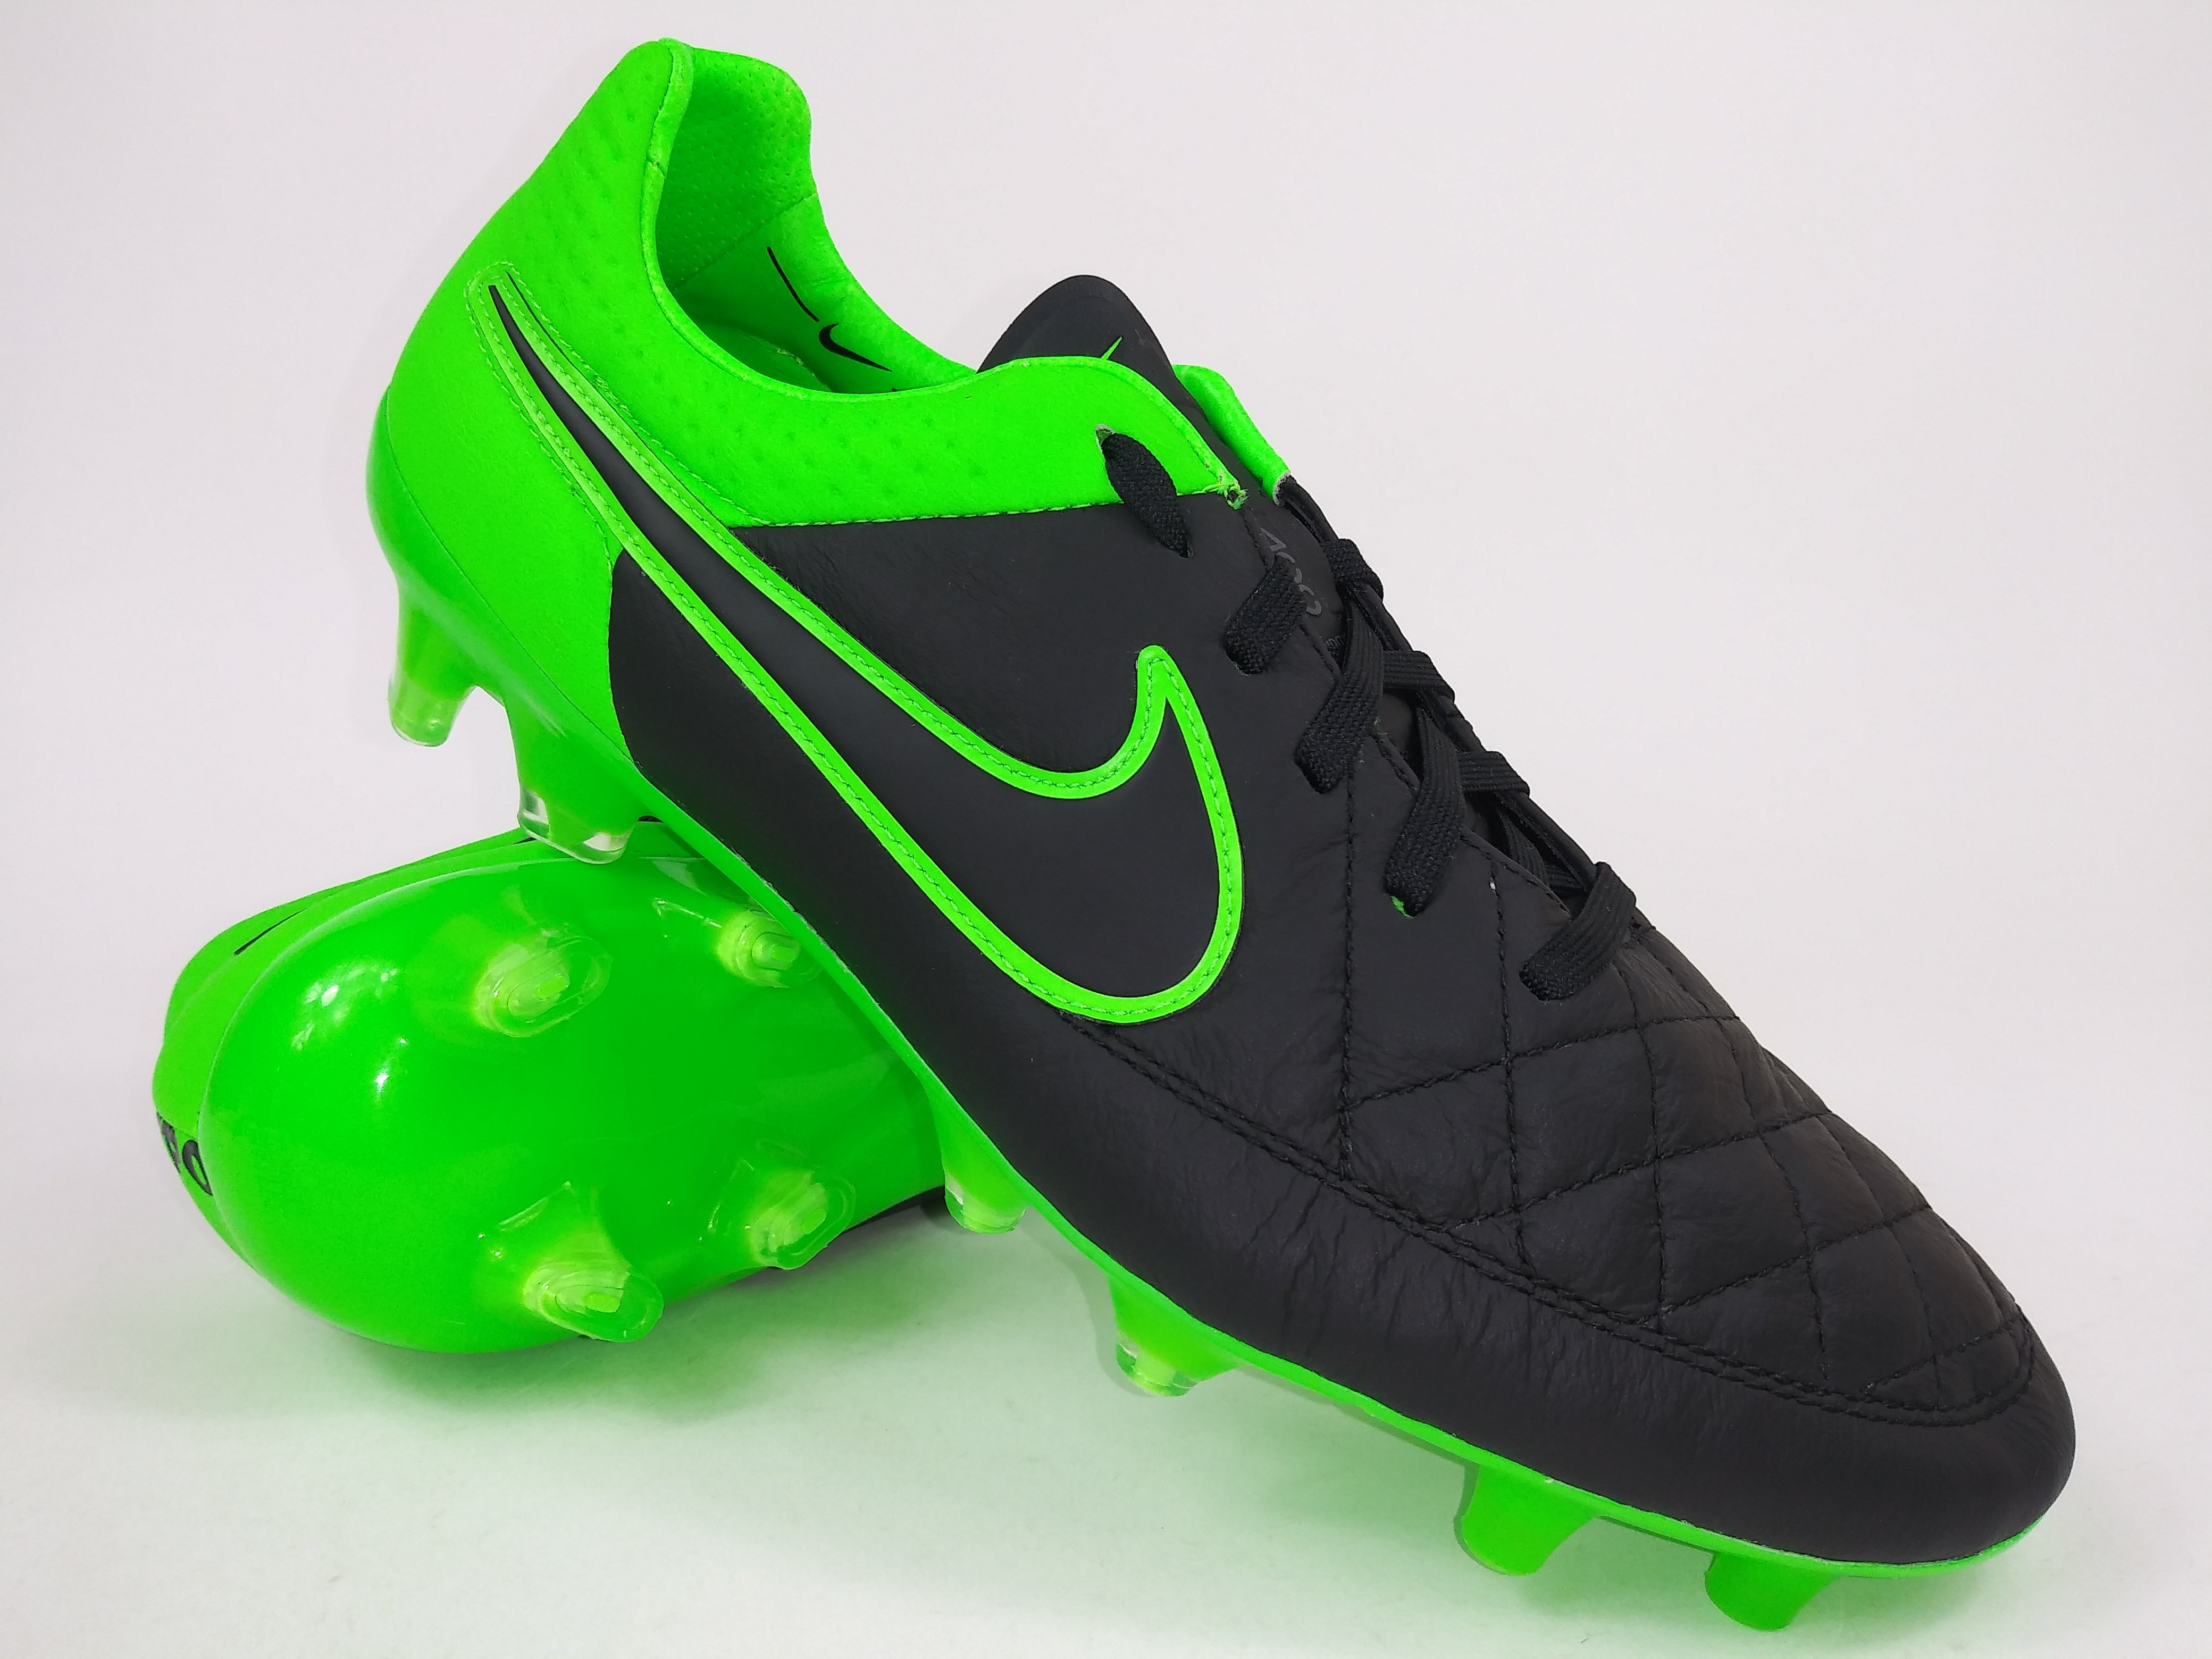 Nike Tiempo V FG Green Villegas Footwear